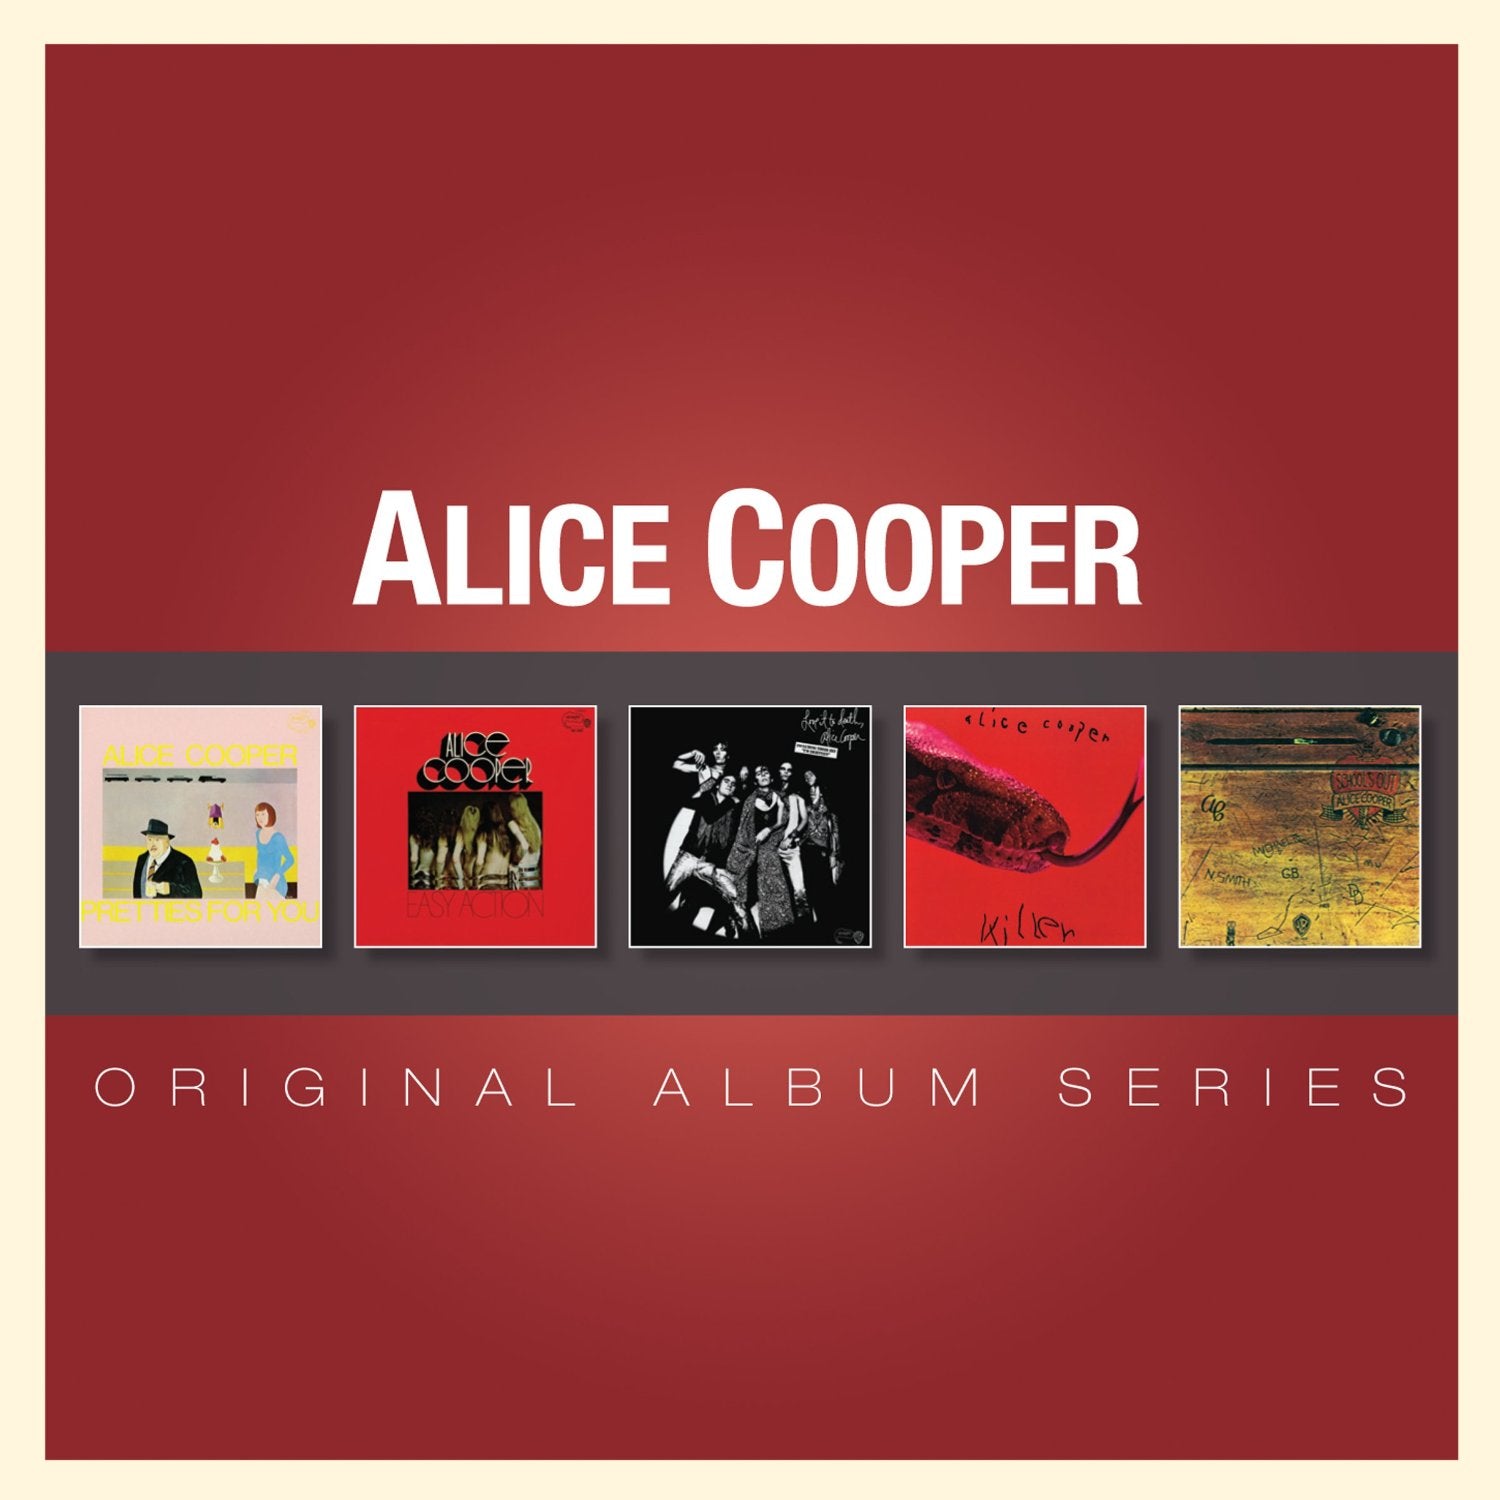 Alice Cooper "Original Album Series Vol. 1" 5 CD Box Set